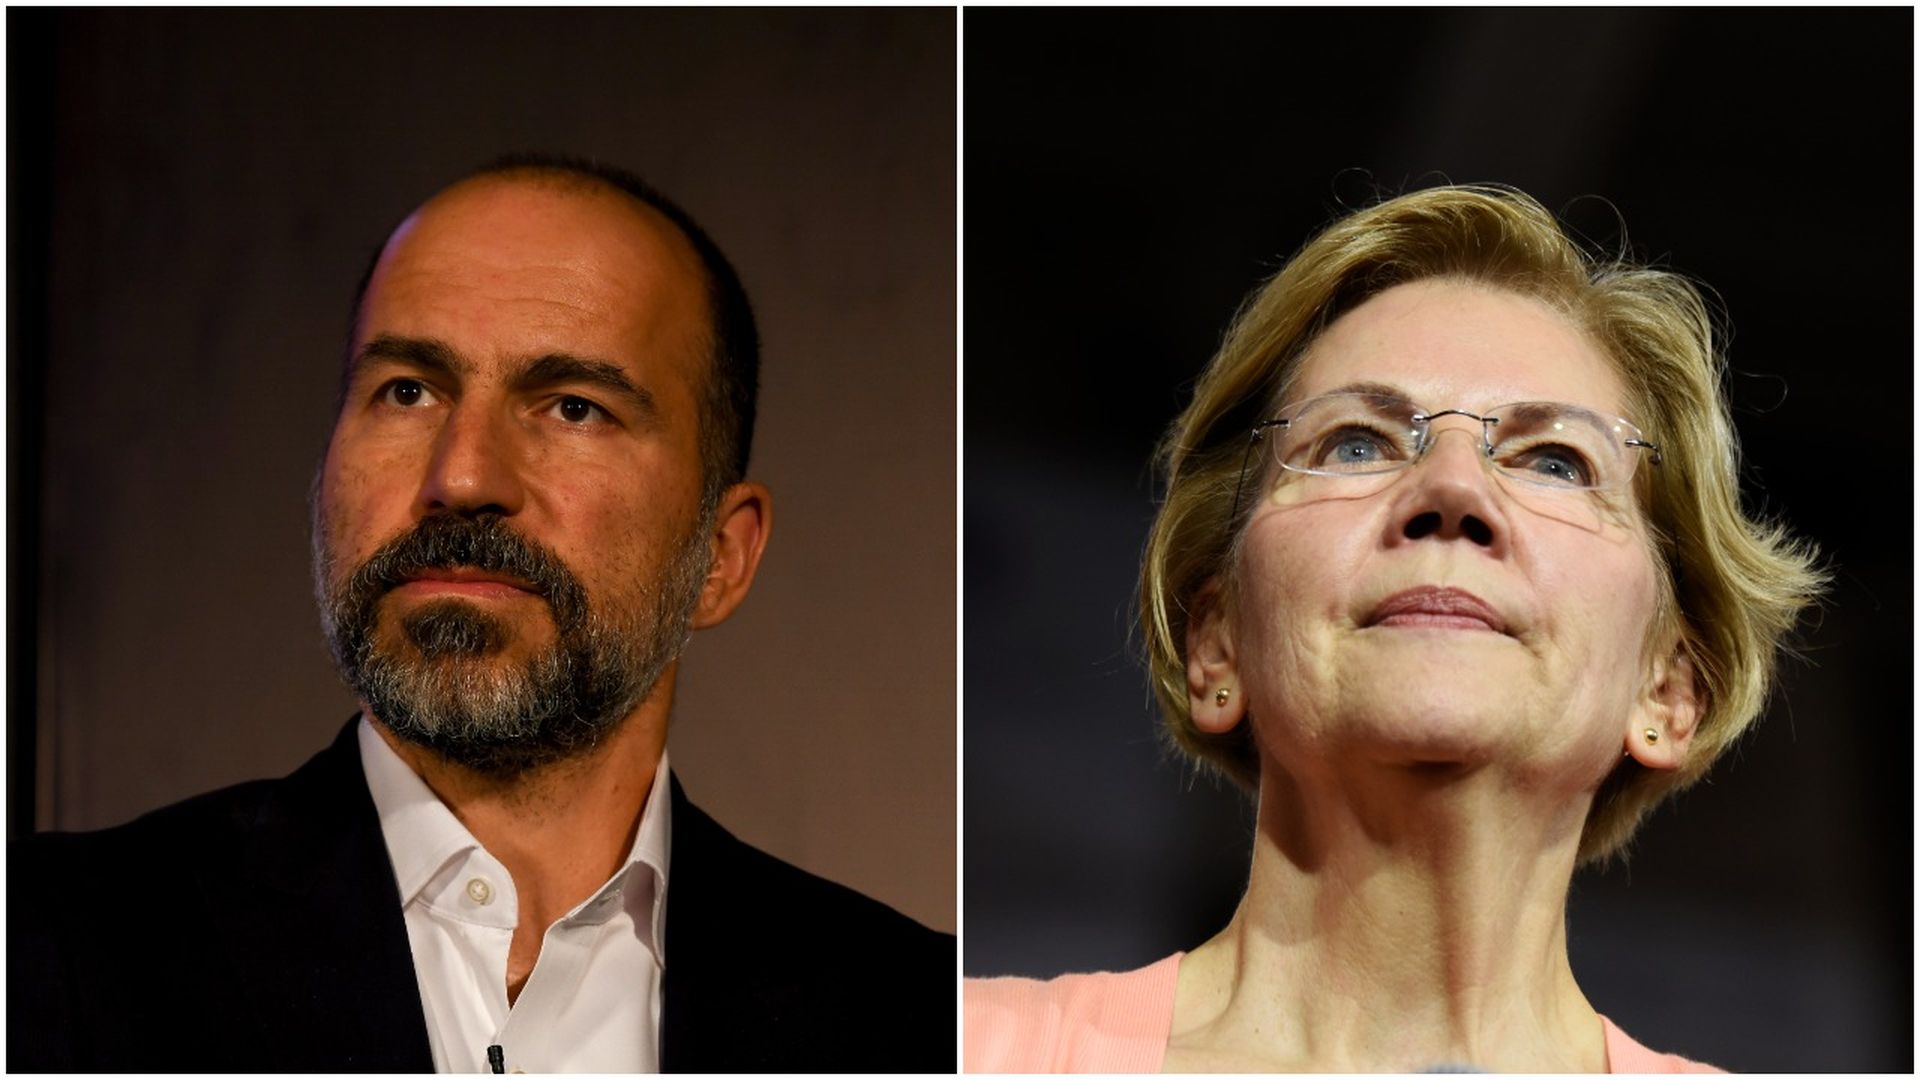 Left, Uber CEO Dara Khosrowshahi; Right, Sen. Elizabeth Warren